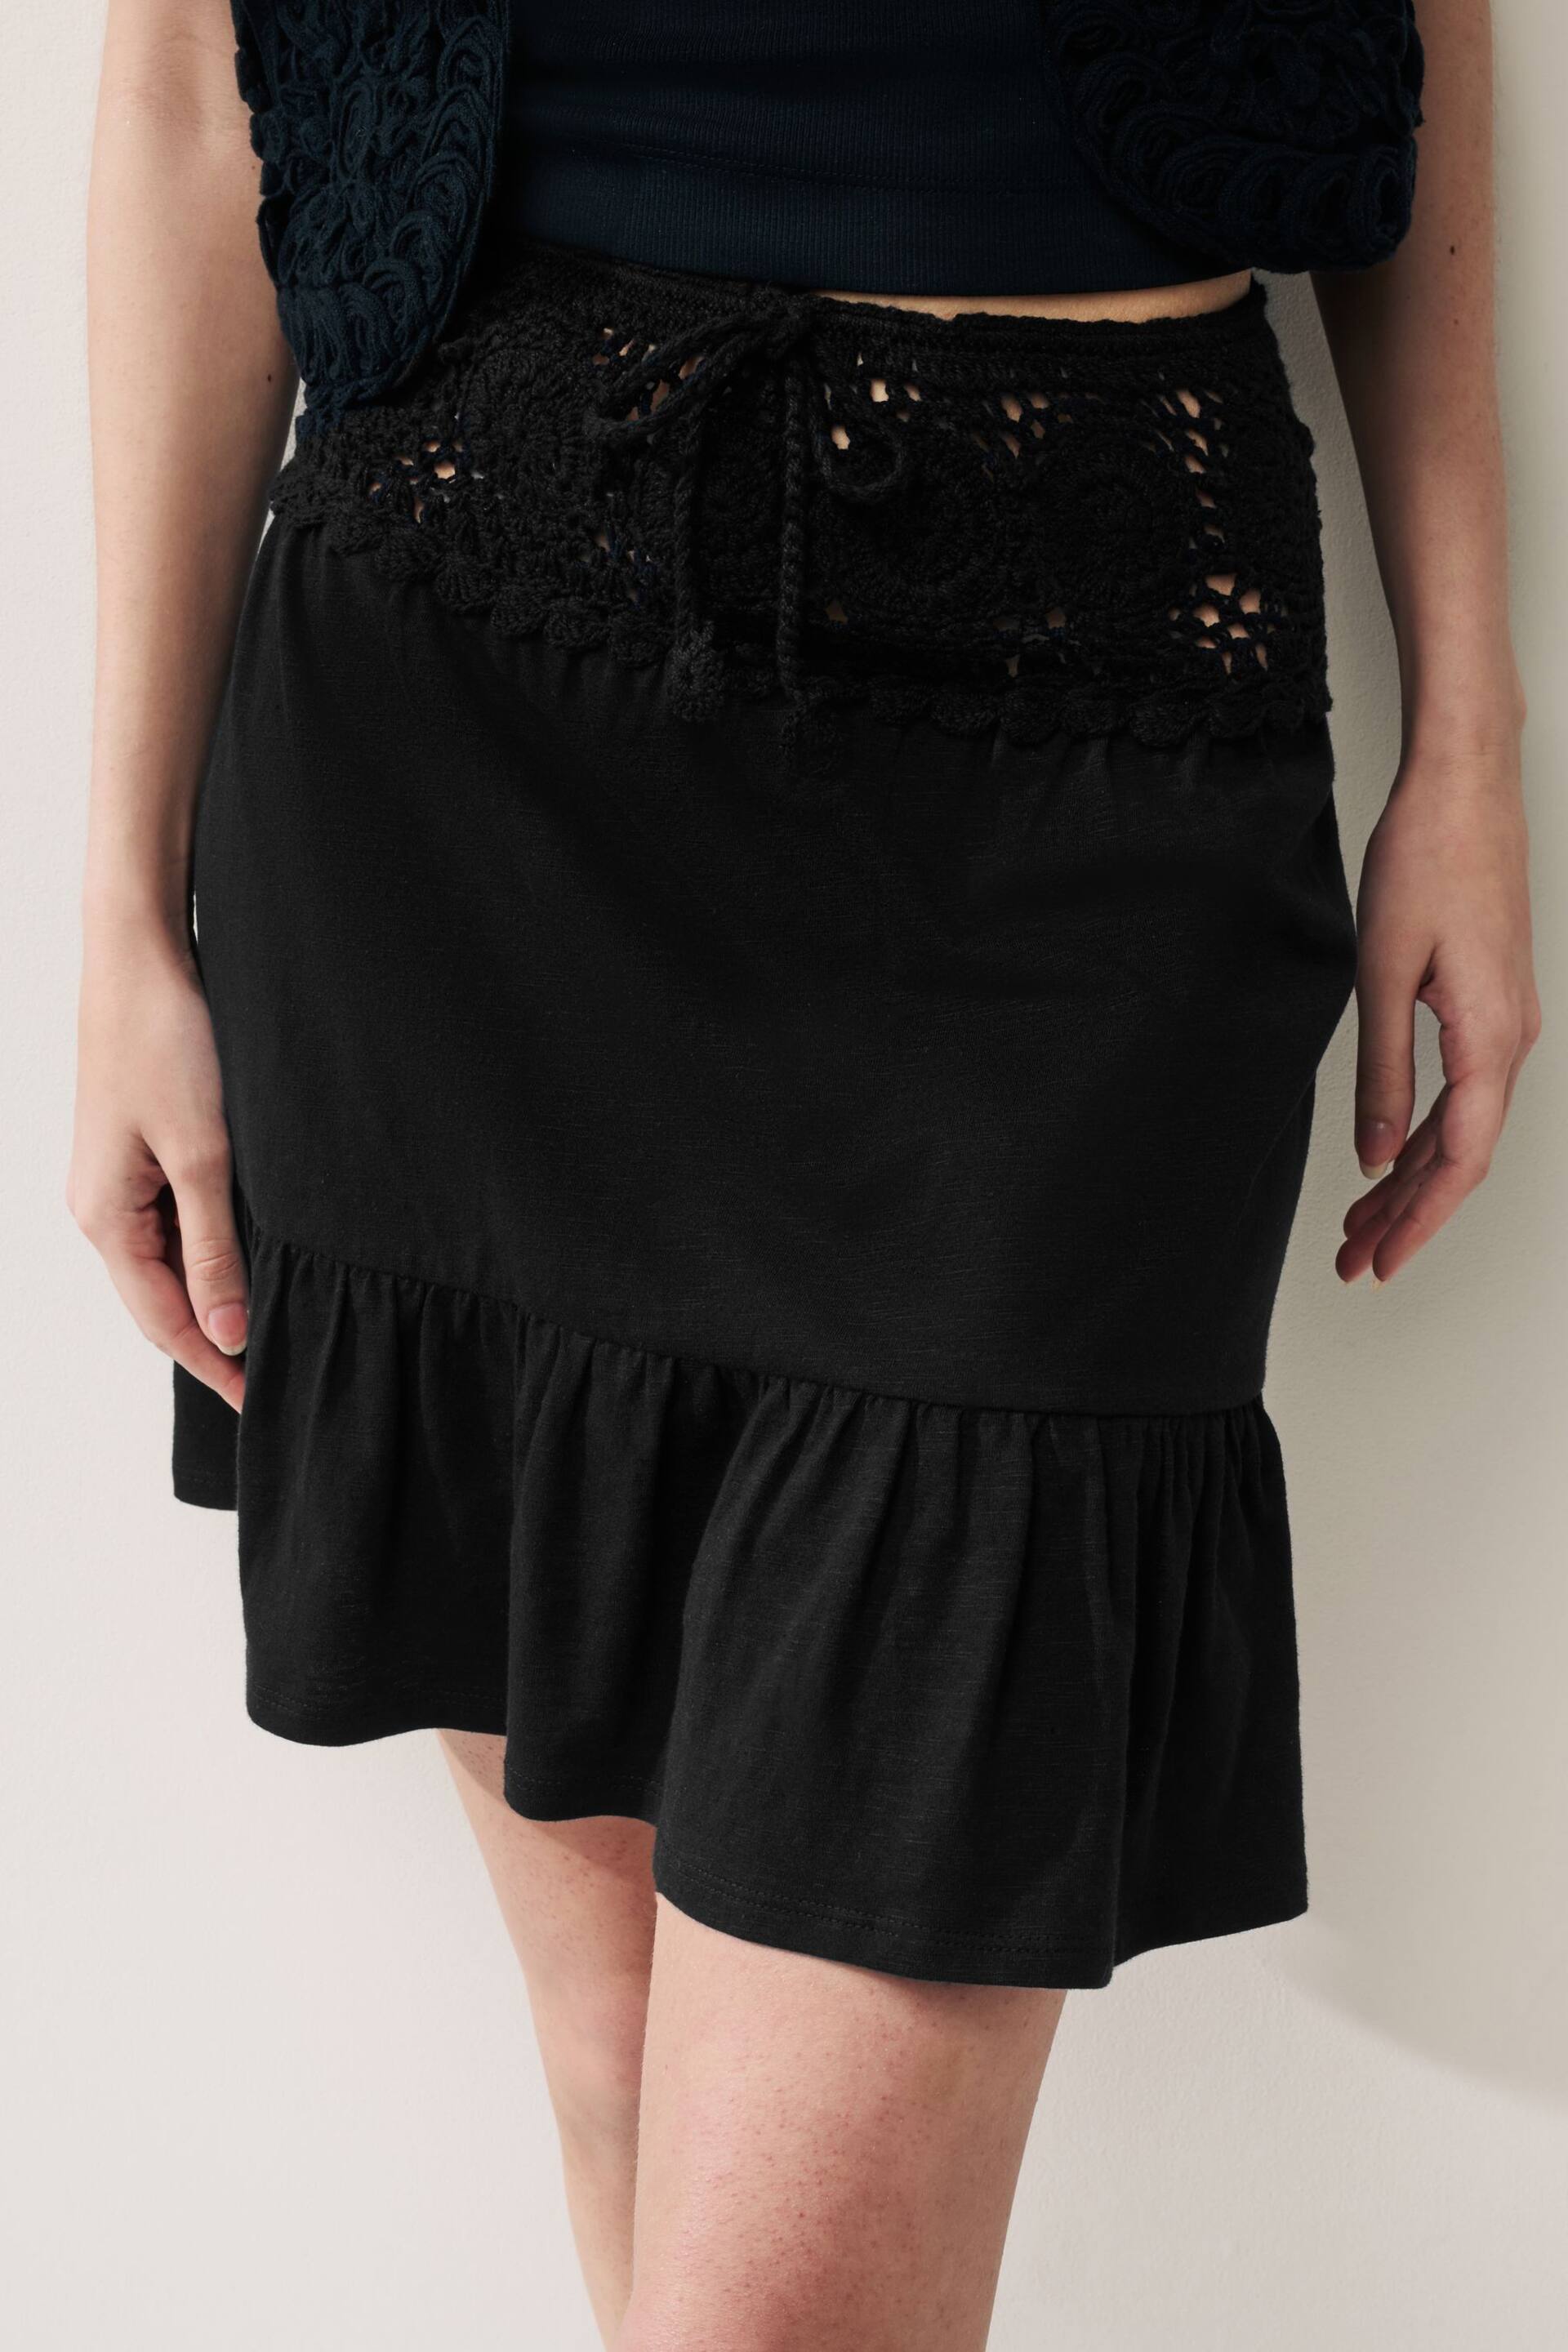 Black Crochet Mini Skirt - Image 4 of 6